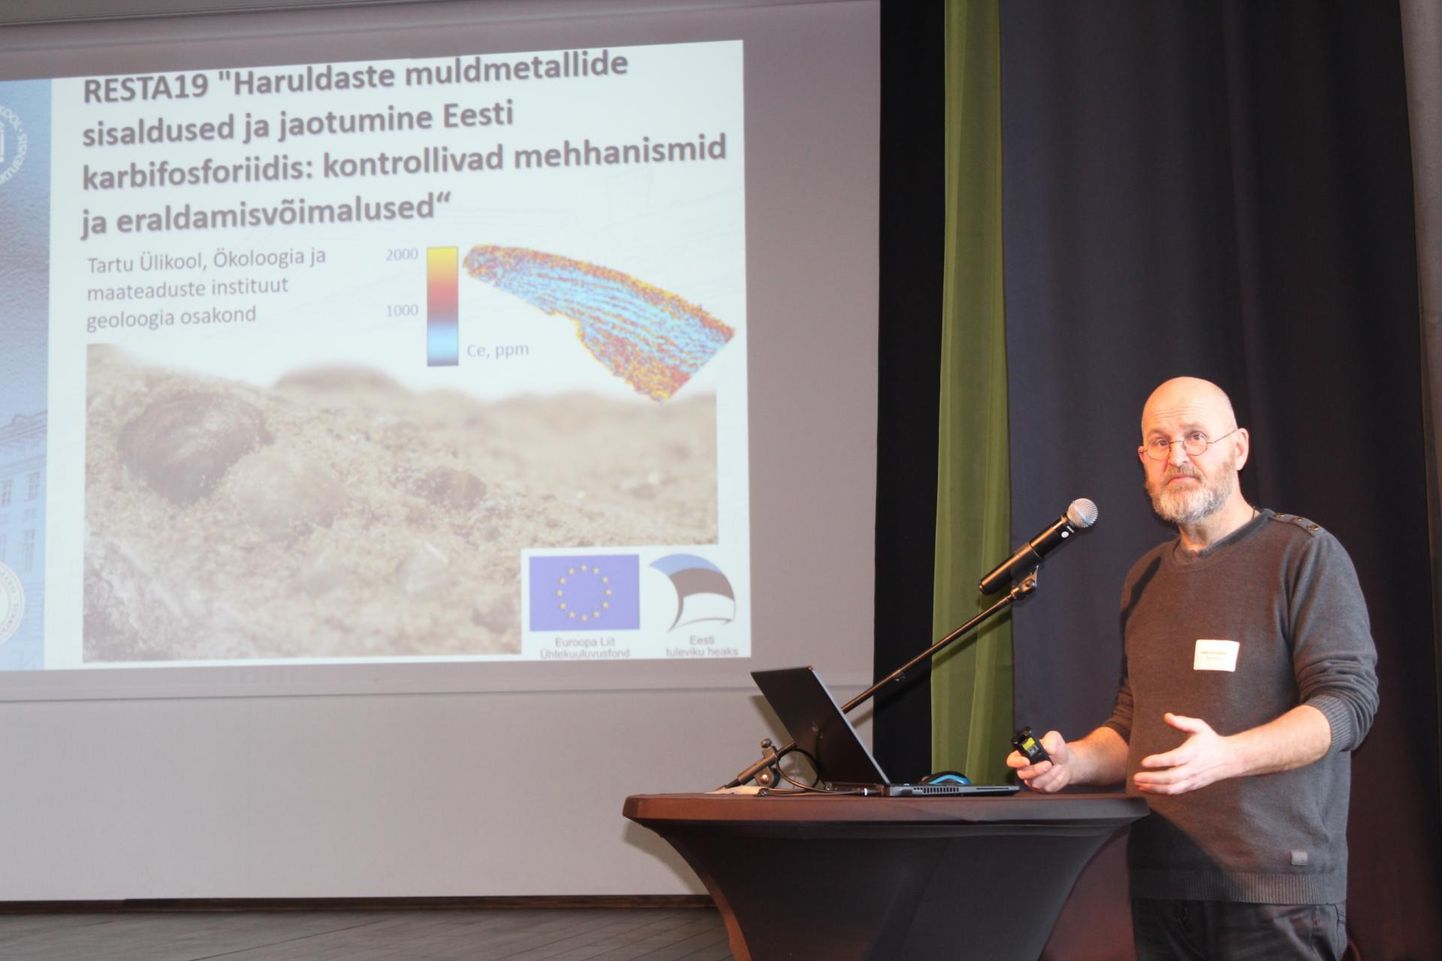 Akadeemik Kalle Kirsimäe on üritanud leida lahendust, kuidas karbifosforiidist haruldasi muldmetalle eraldada.